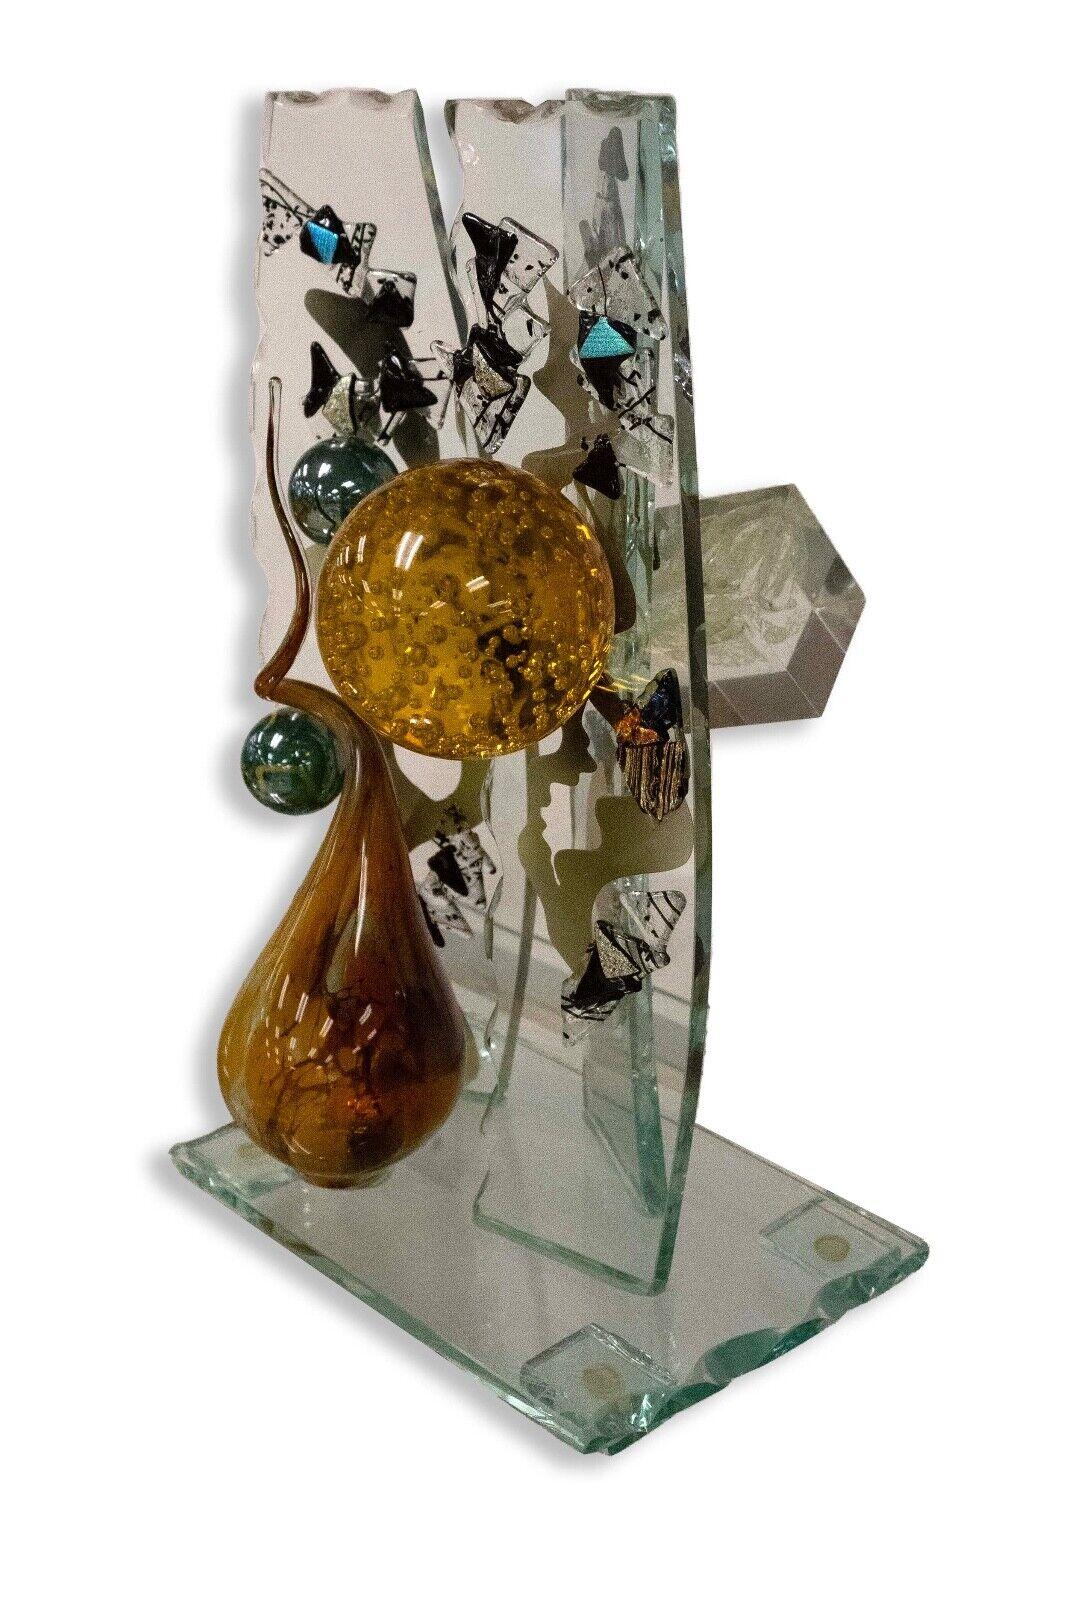 Une sculpture d'assemblage abstraite, fantaisiste et intrigante, en verre fusionné et soufflé, représentant des formes modernes uniques, réalisée par l'artiste verrier Steve Brewster. Dimensions : 11 